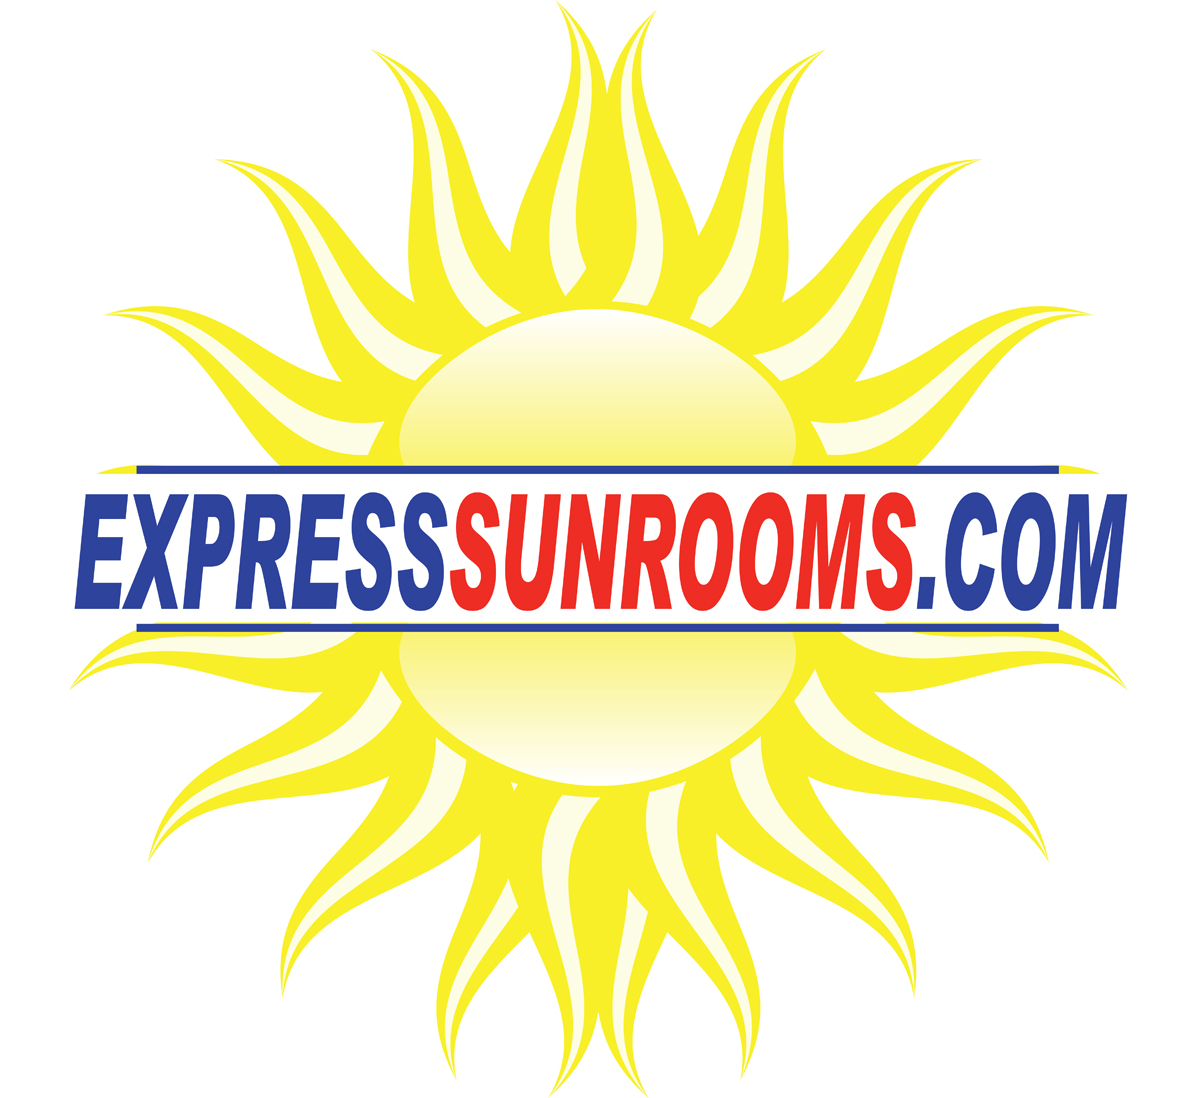 Express Sunrooms.com Logo